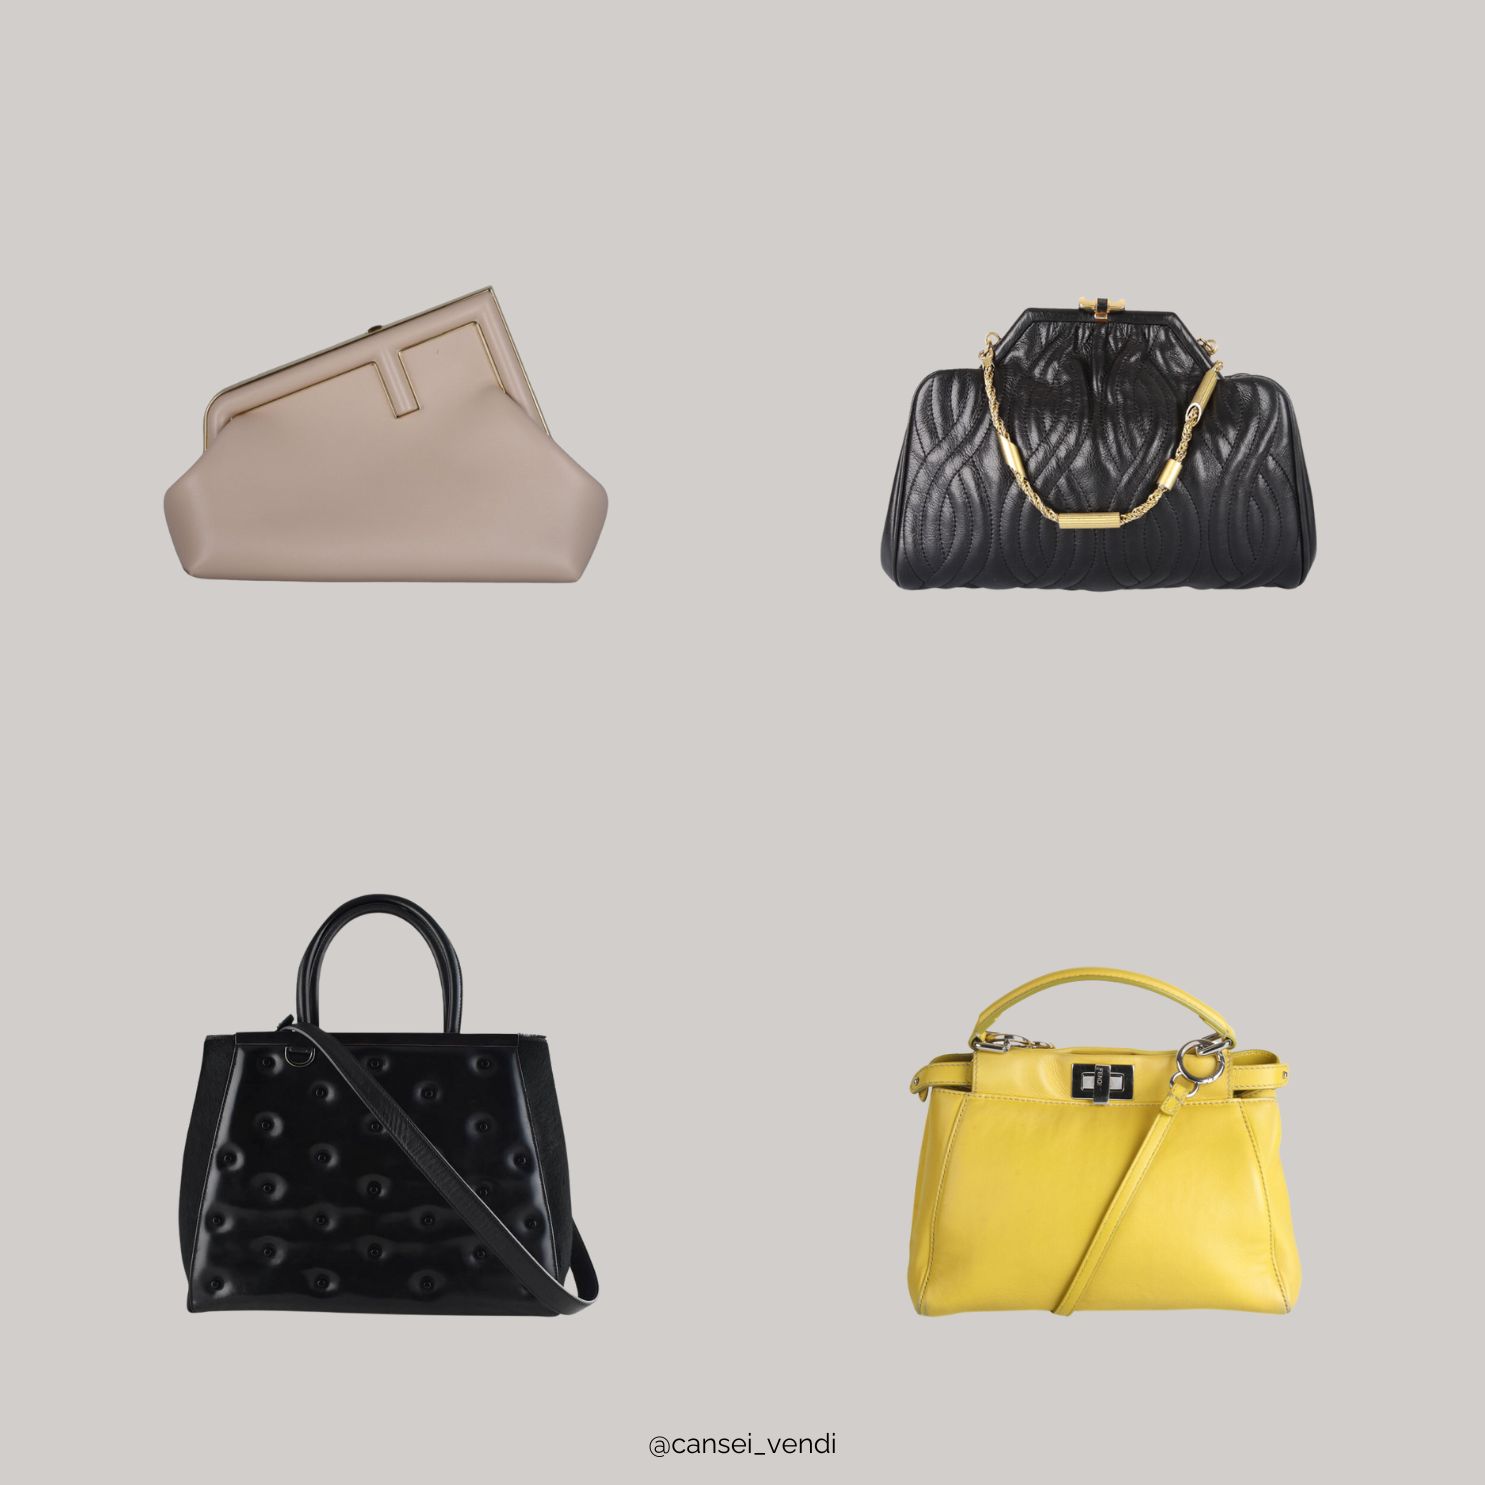 As 10 marcas de bolsas femininas mais procuradas - Cansei Vendi - Brechó de  Luxo Online e Moda Circular